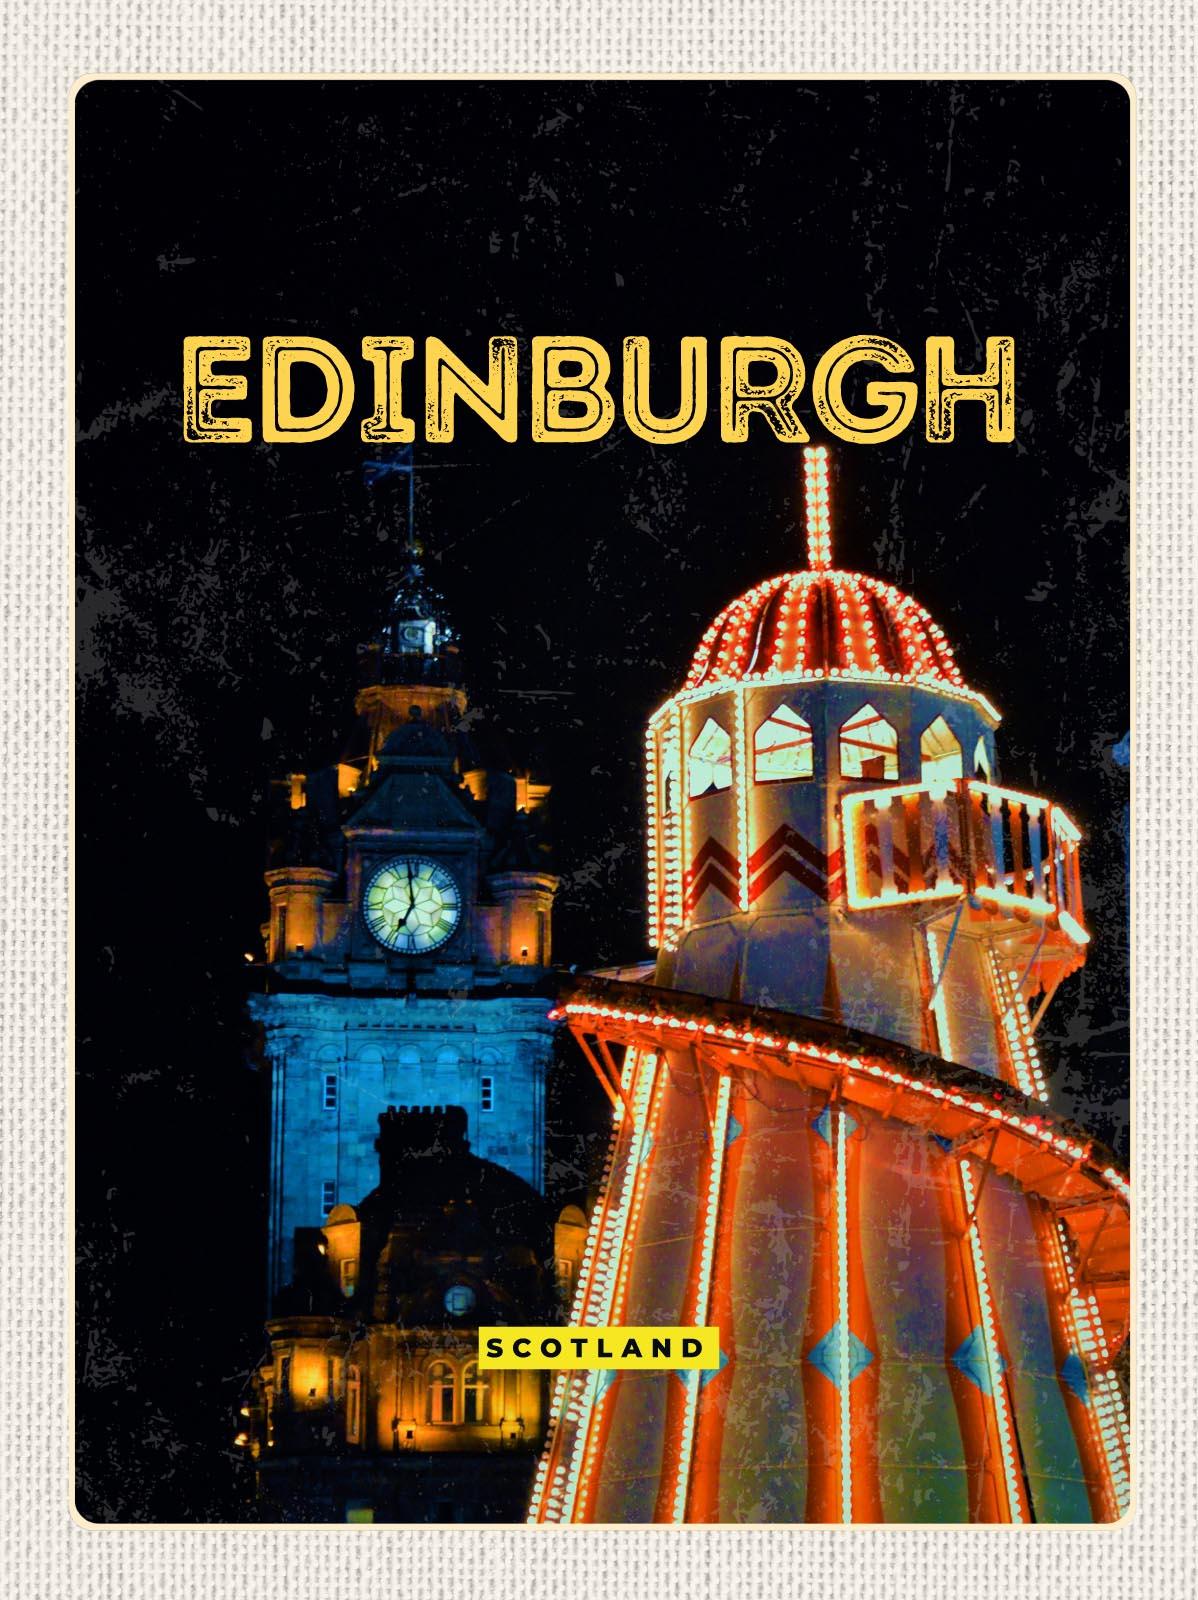 Blechschild Reise 30x40 cm Edinburgh Scotland Nacht Lichter Deko Schild tin sign